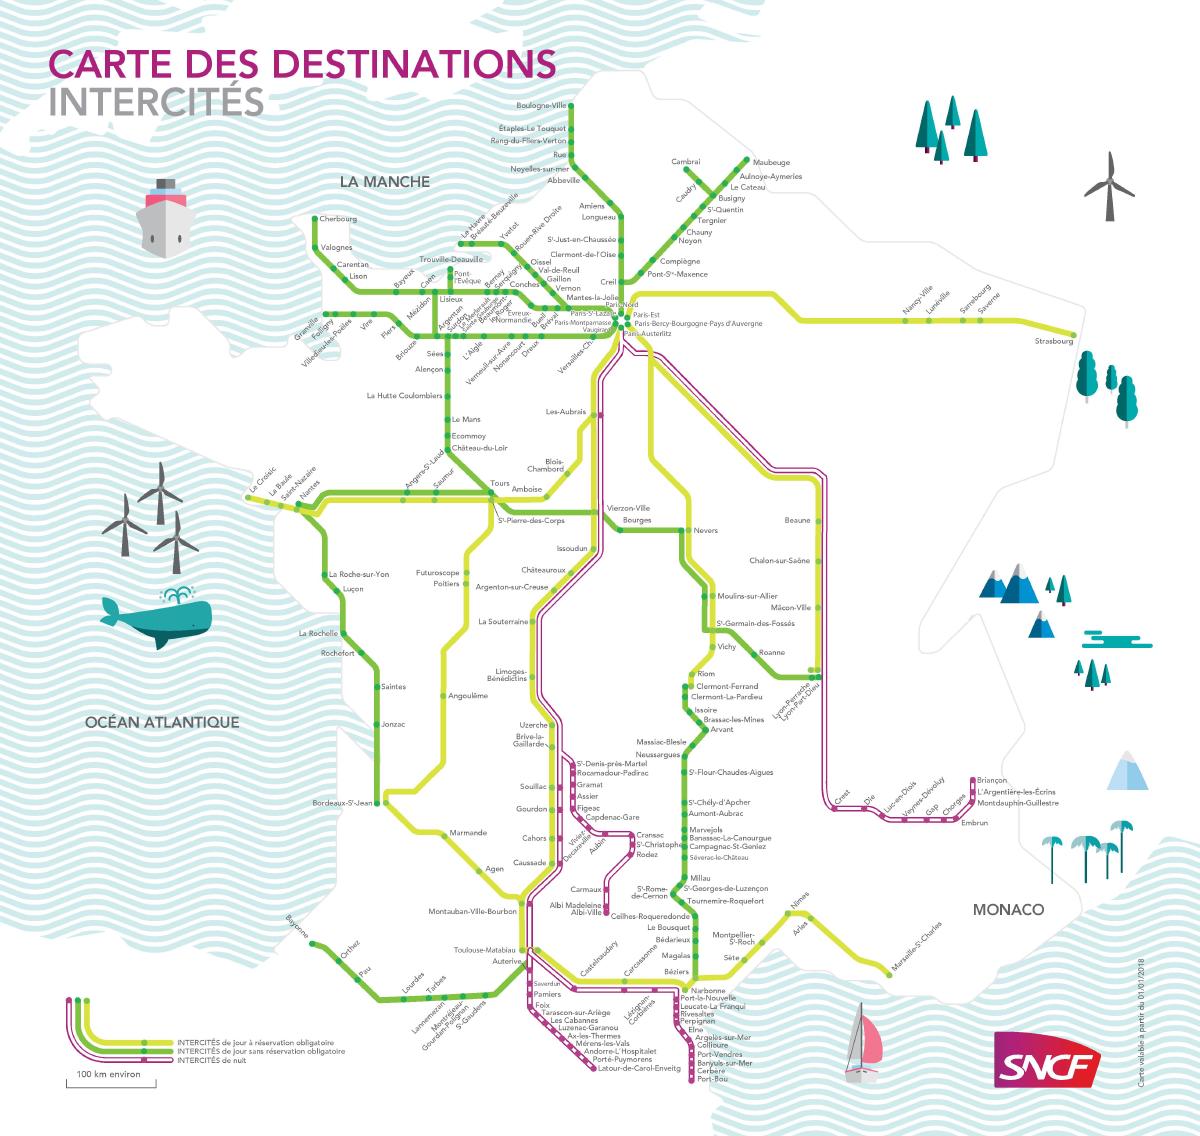 Le réseau Intercités en 2019. Des liaisons depuis Paris ont disparu depuis, notamment les Intercités 100% éco.